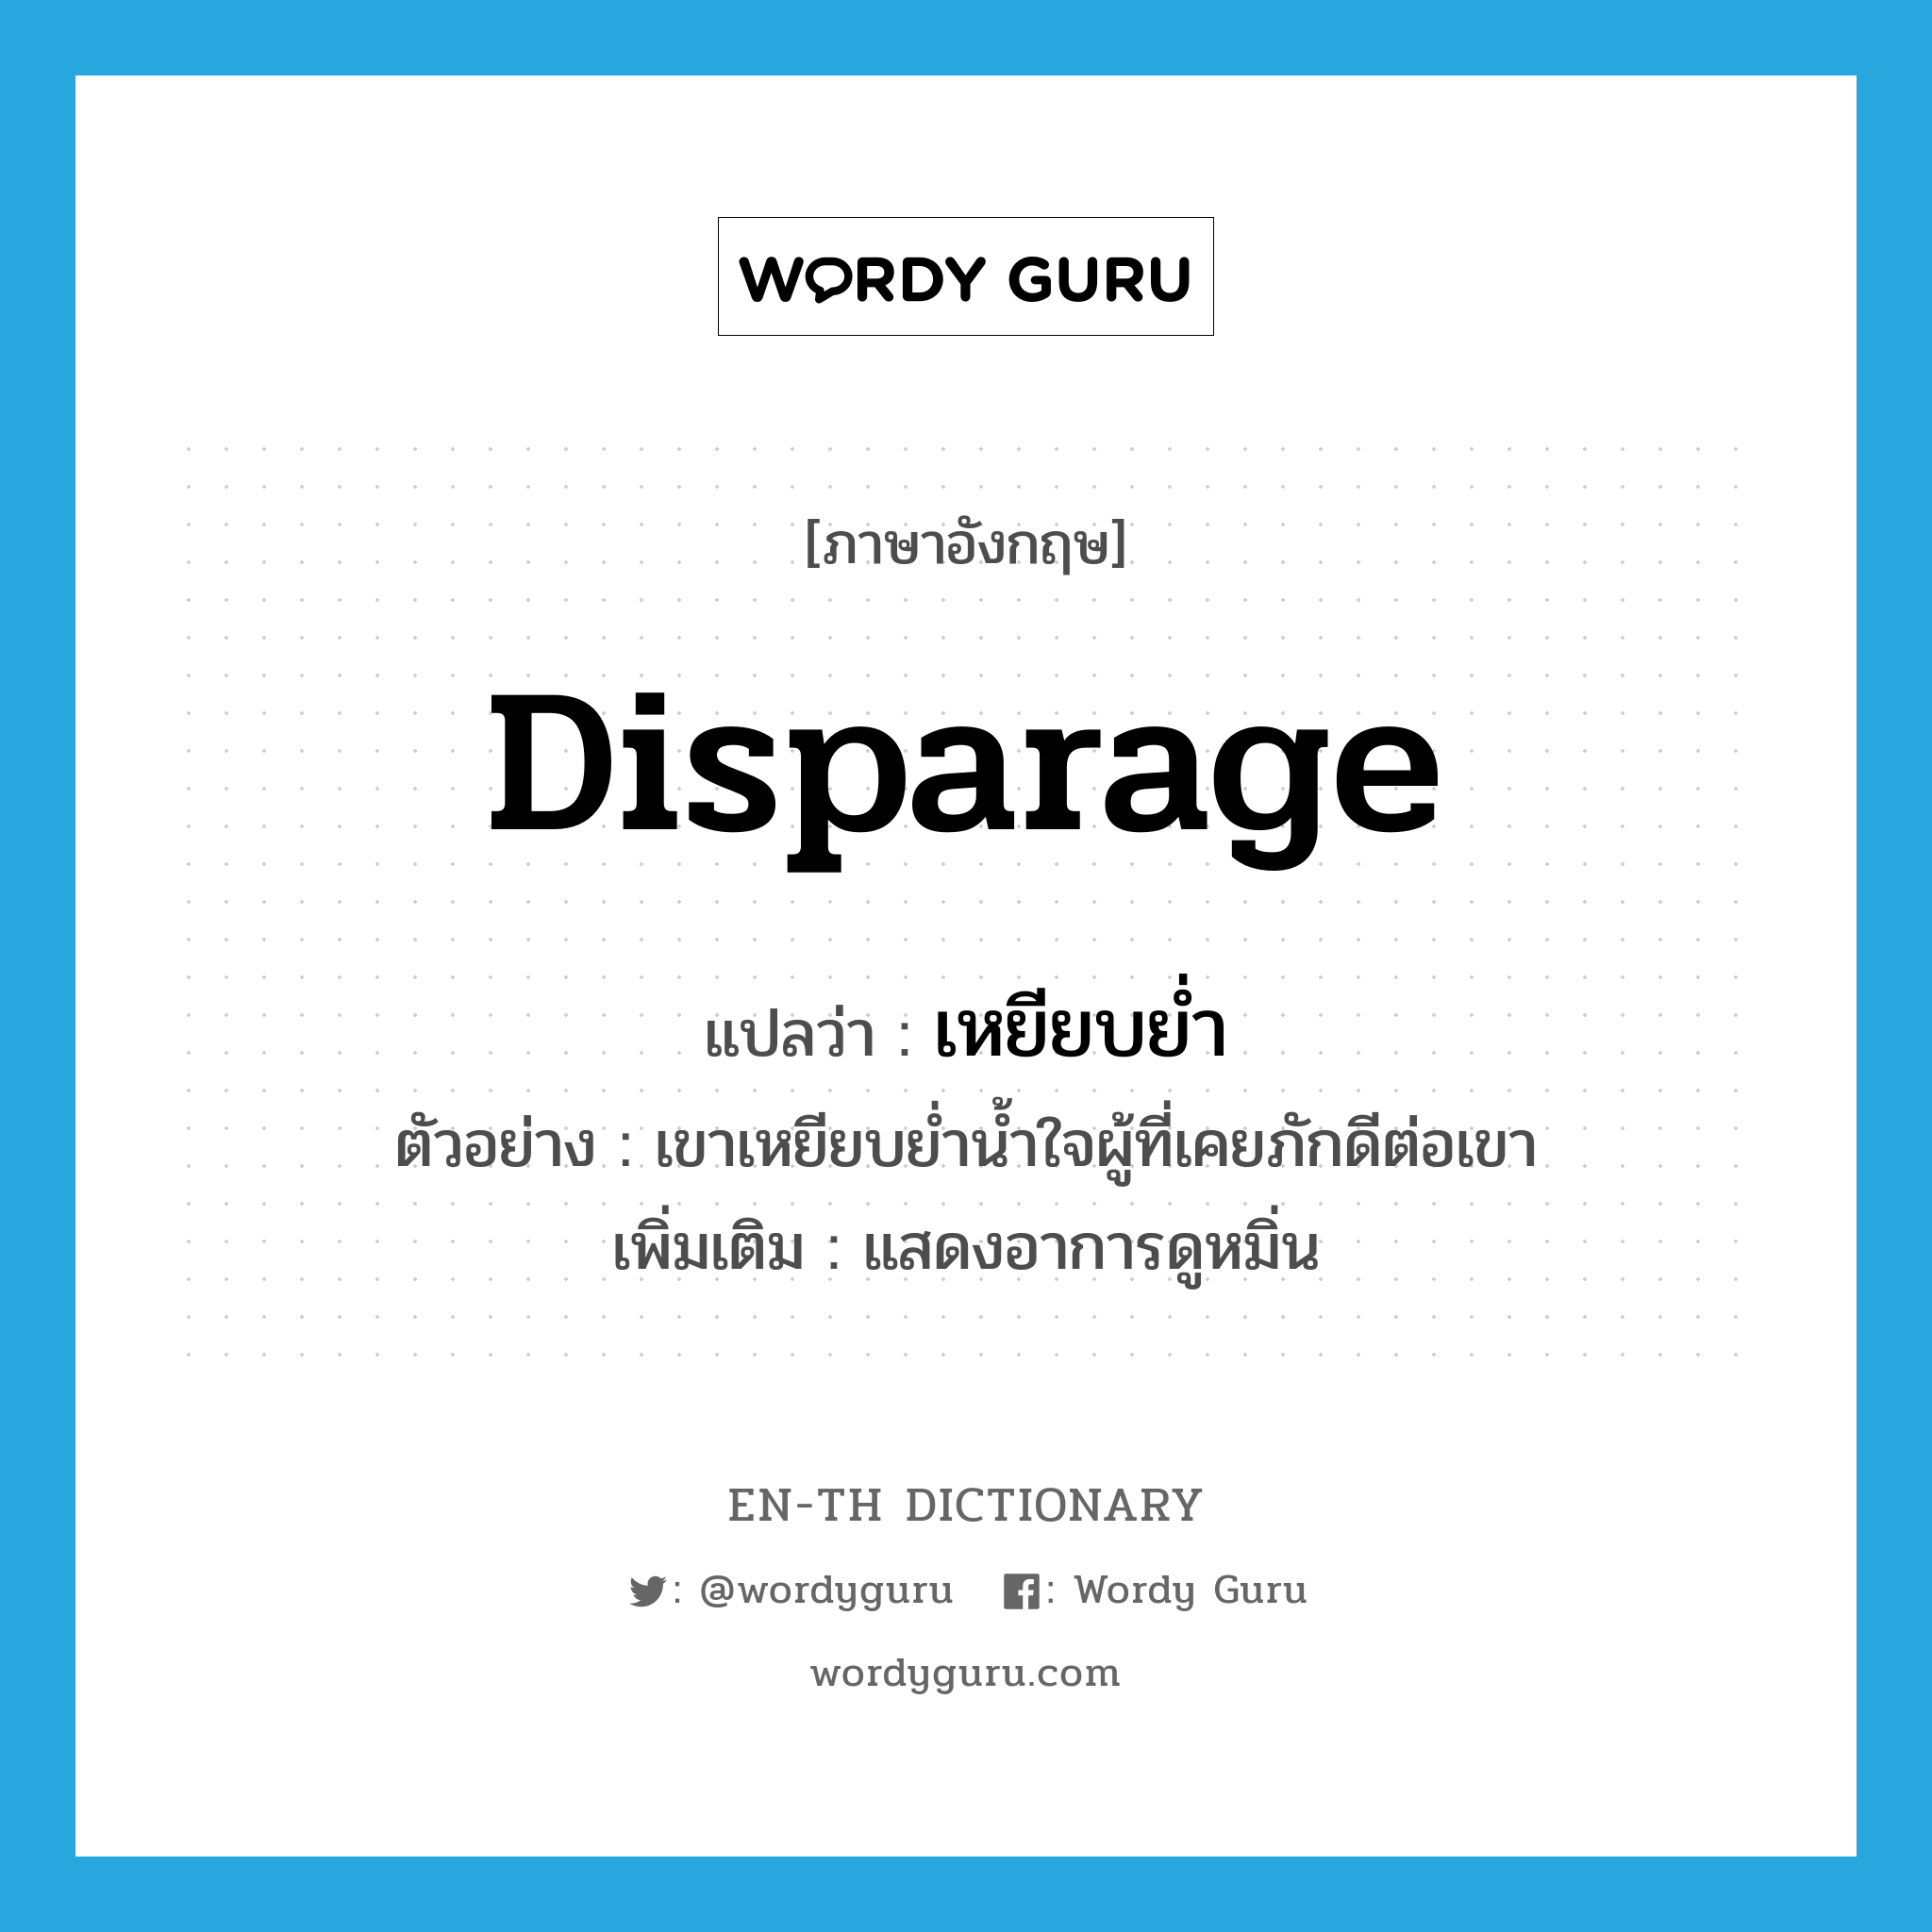 disparage แปลว่า?, คำศัพท์ภาษาอังกฤษ disparage แปลว่า เหยียบย่ำ ประเภท V ตัวอย่าง เขาเหยียบย่ำน้ำใจผู้ที่เคยภักดีต่อเขา เพิ่มเติม แสดงอาการดูหมิ่น หมวด V